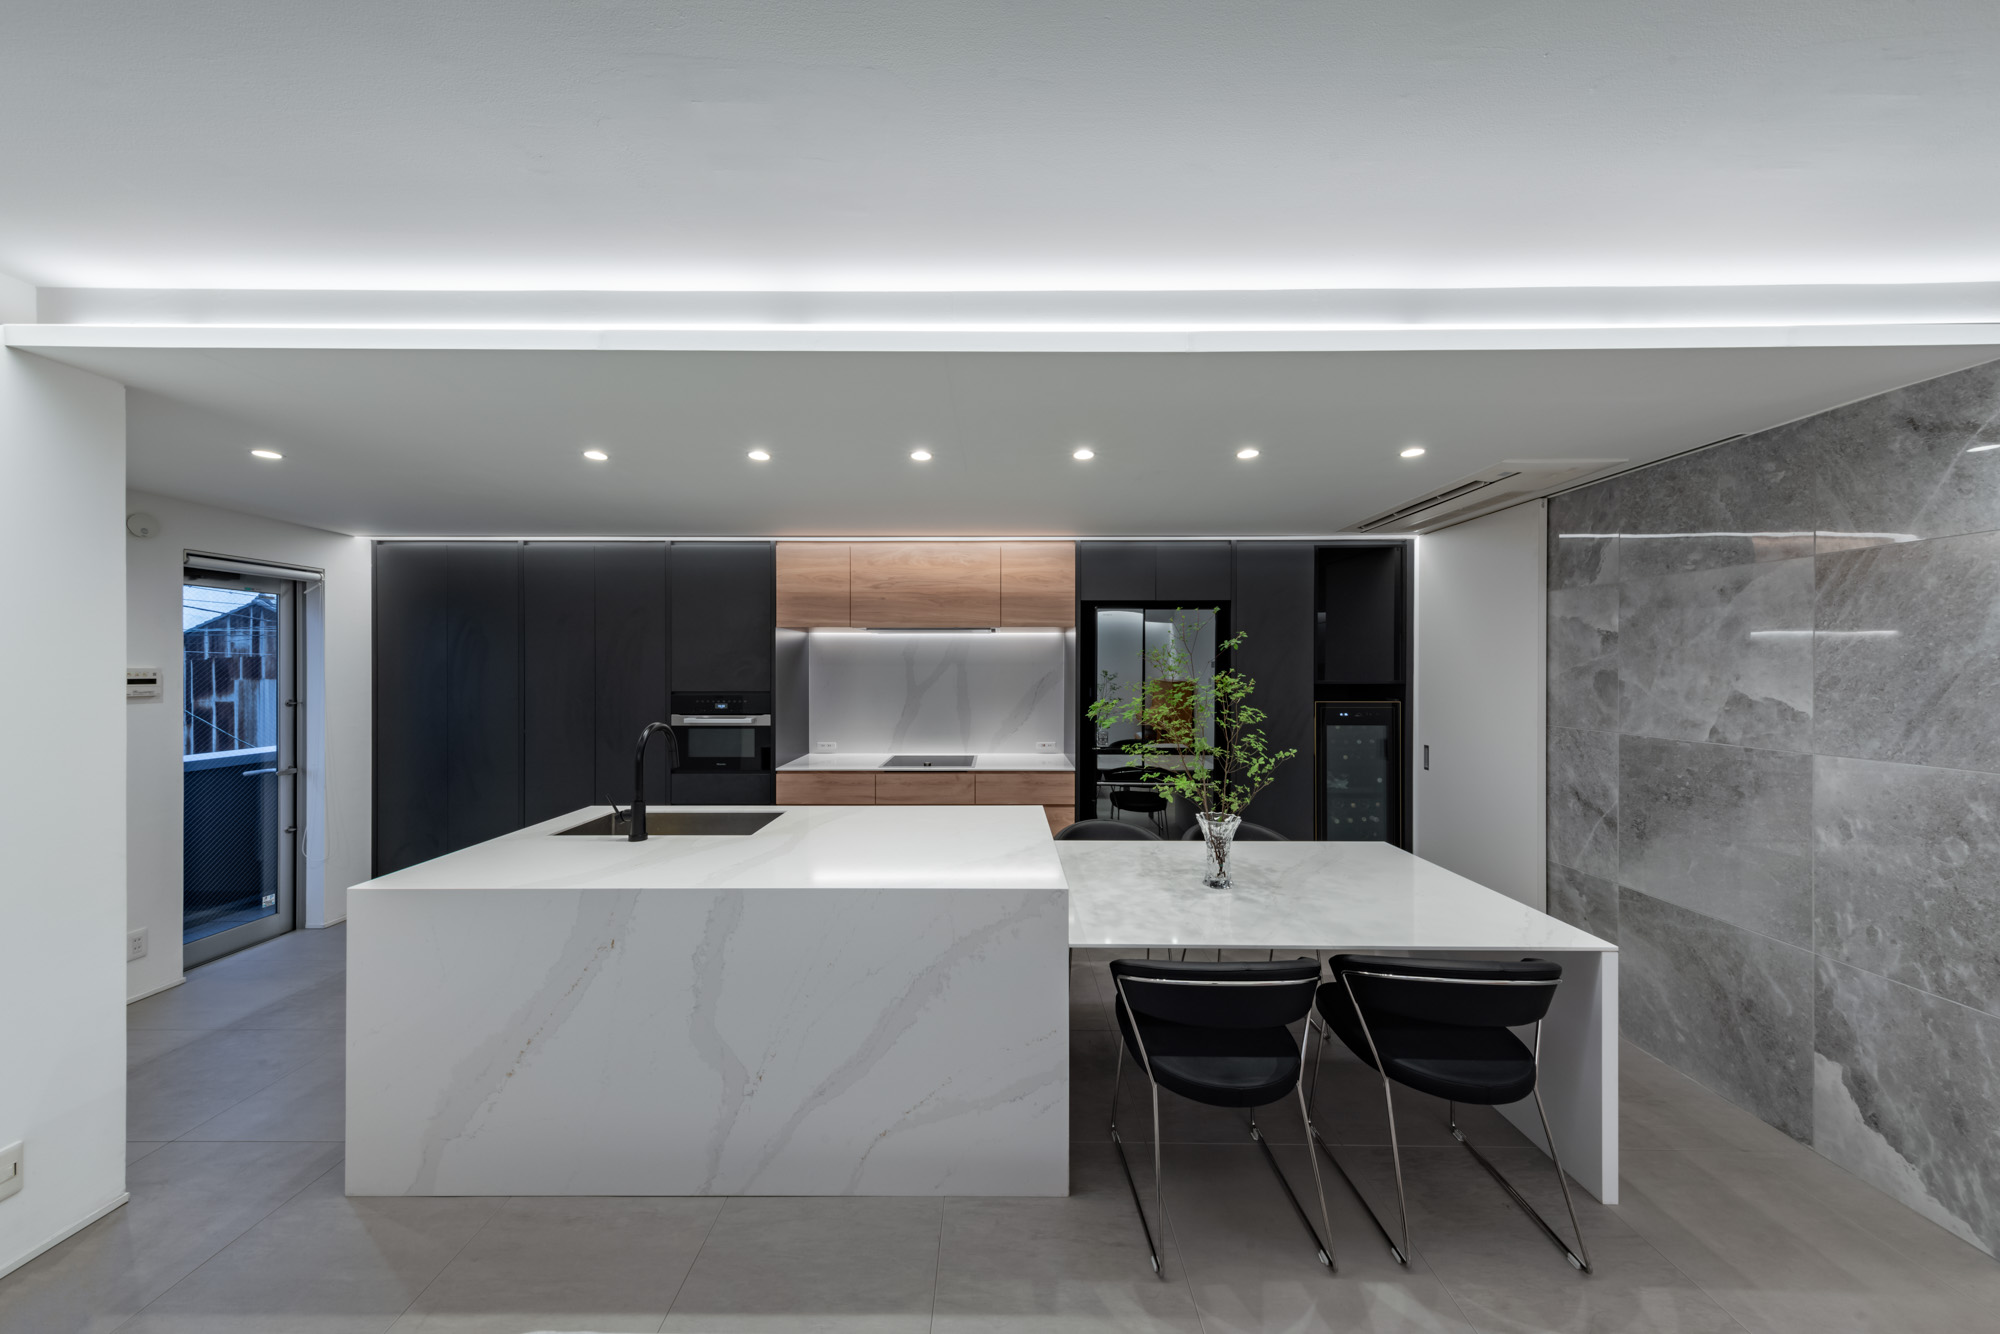 天井に段差を設け、間接照明を仕込んだ空間にある、ダイニングテーブルが一体となった大理石風のキッチン・デザイン住宅